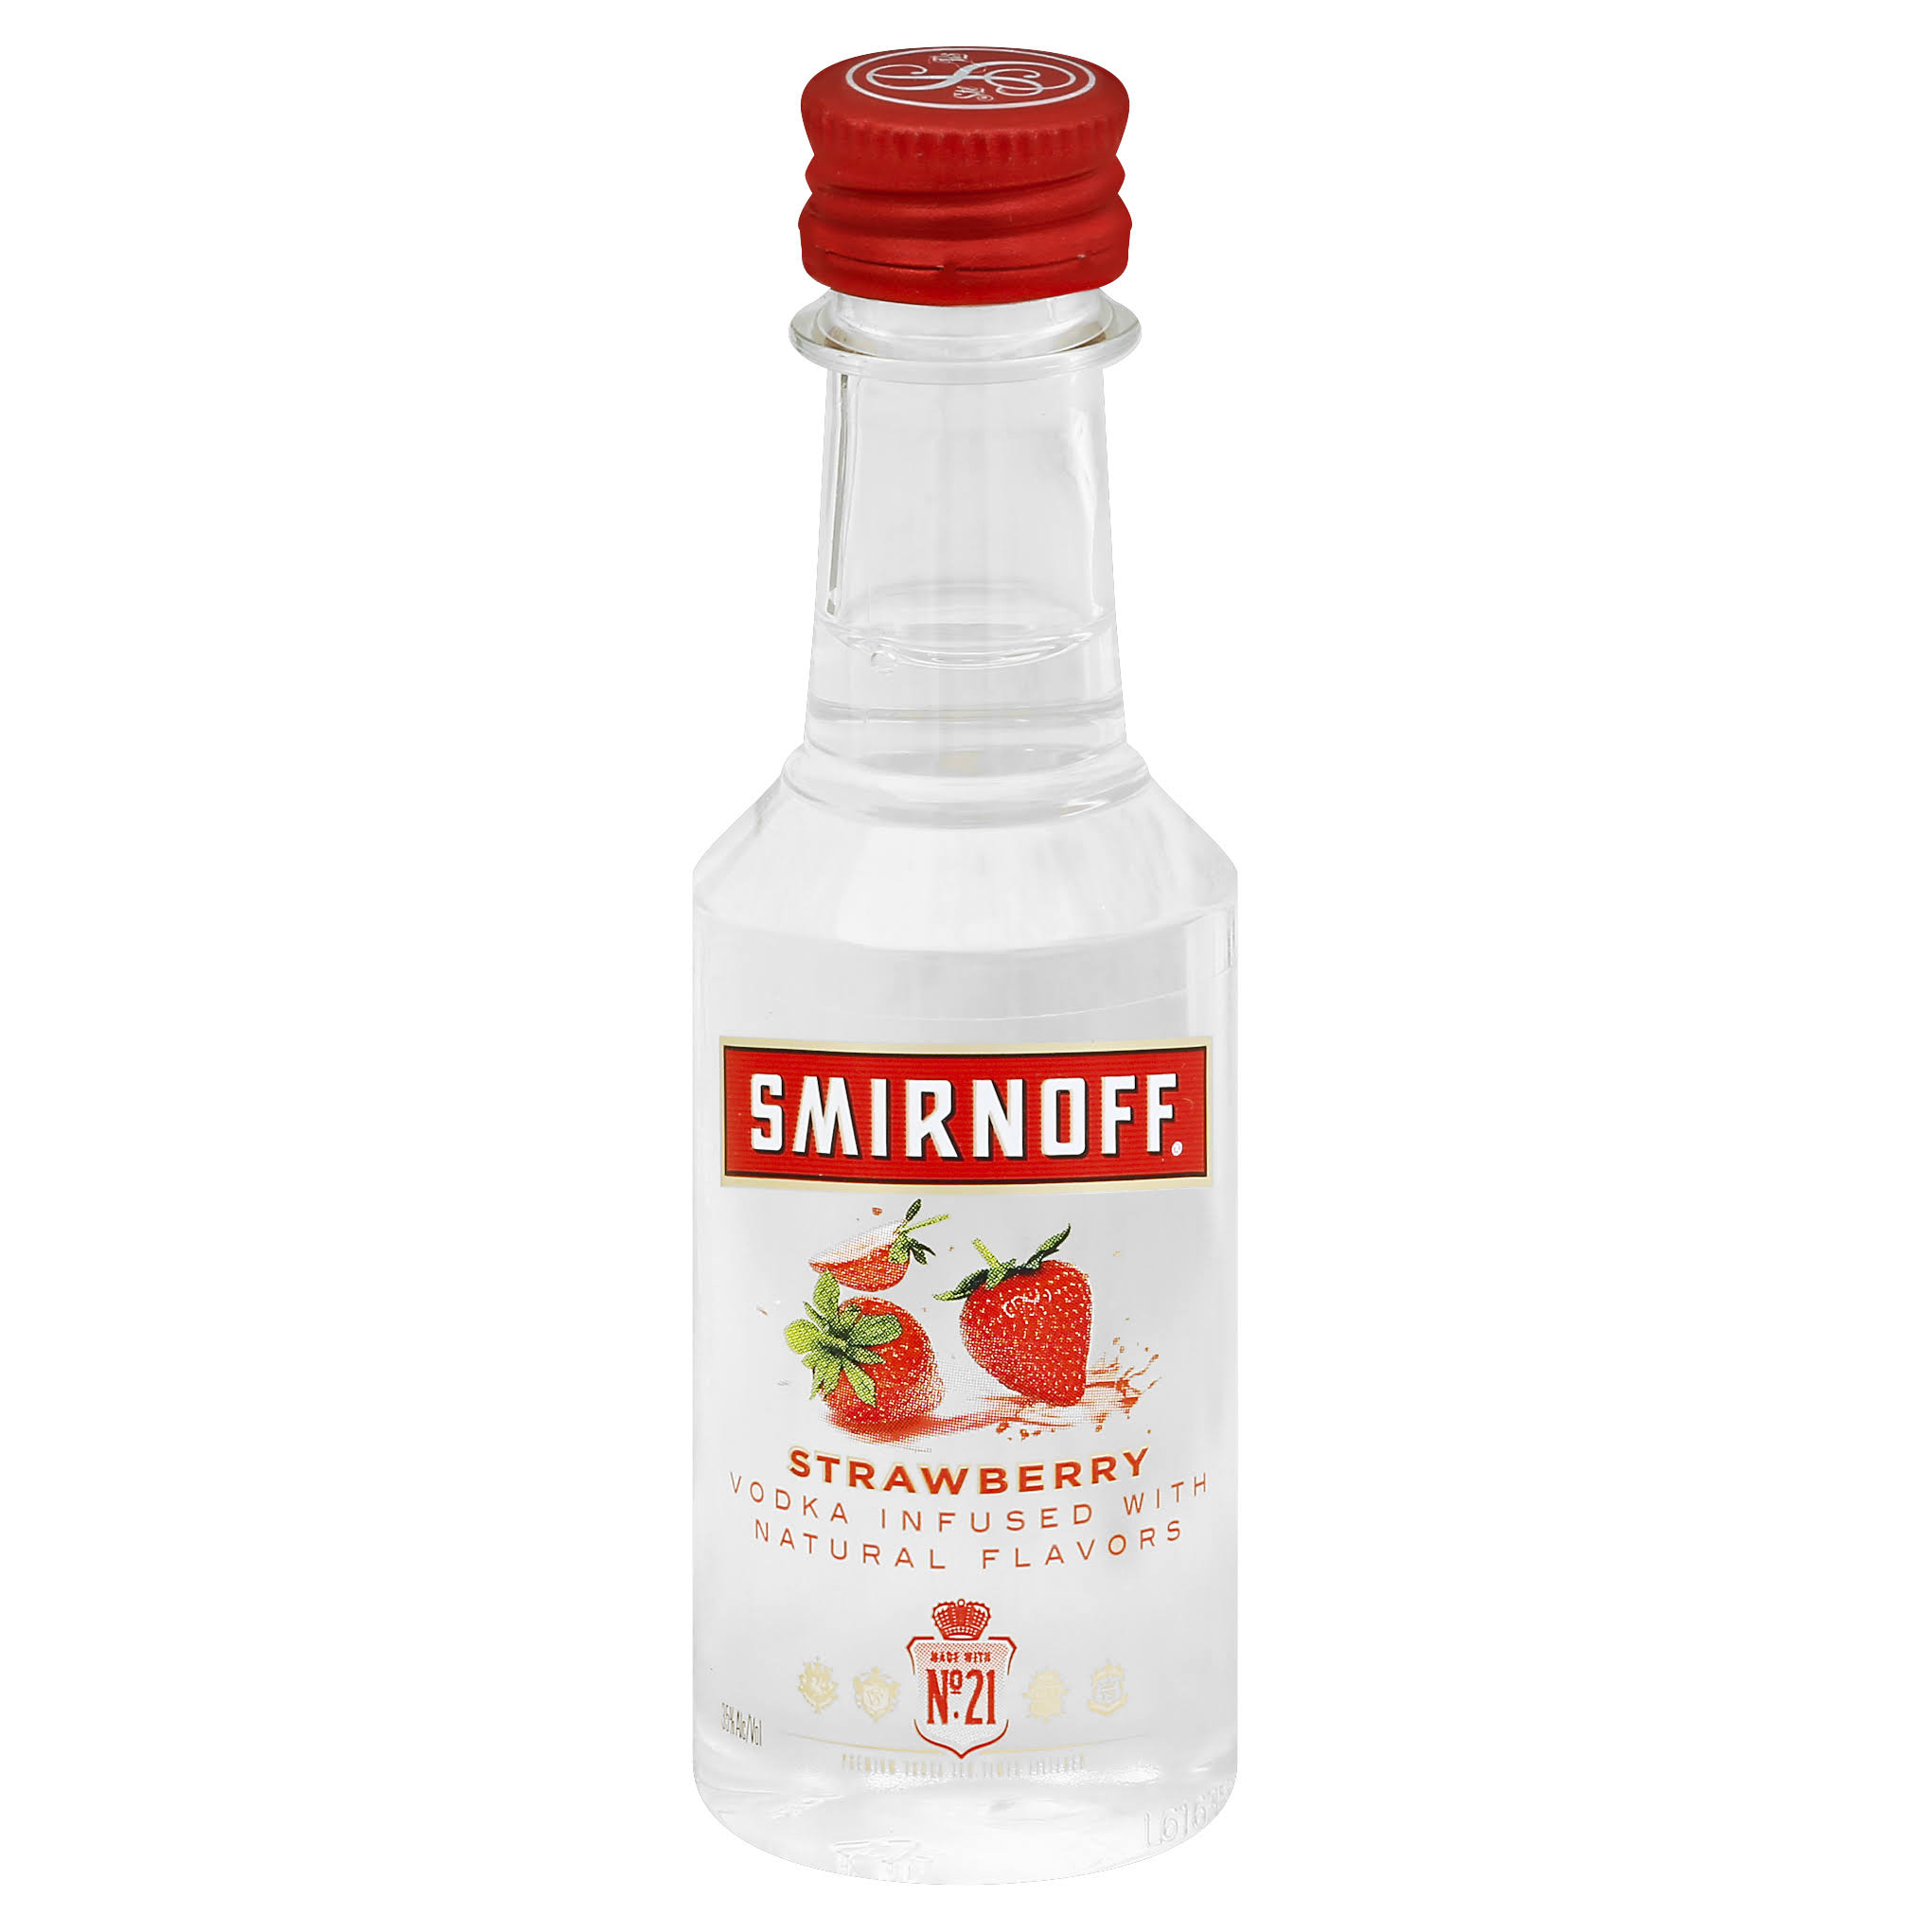 Smirnoff Strawberry Vodka 5cl